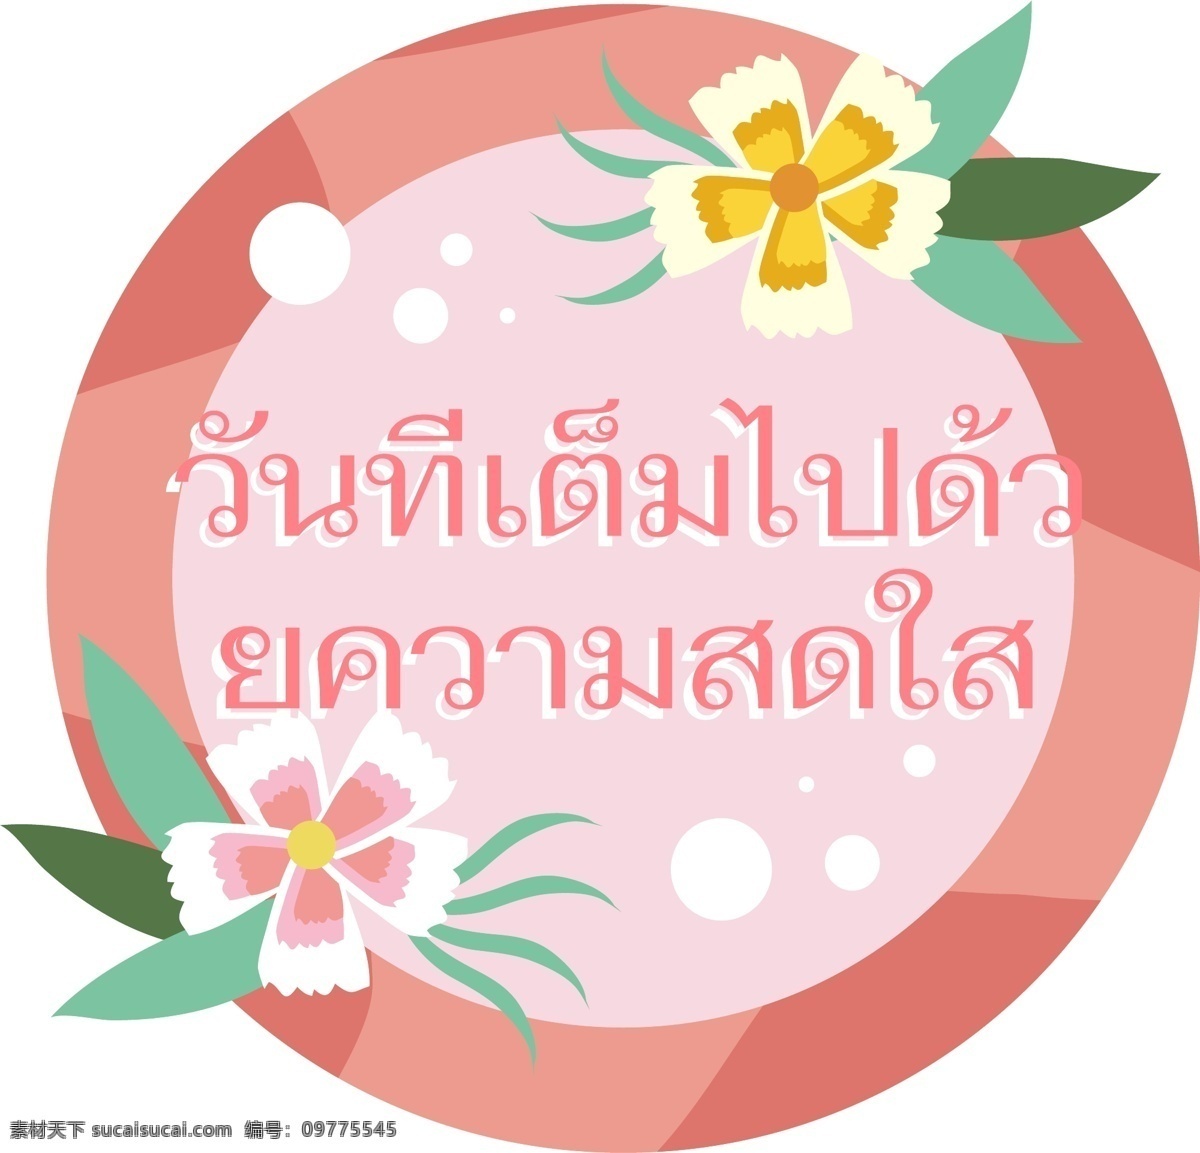 文本 字体 泰国 天 白色 明亮 桃红色 花 填 装 新鲜 鲜花 粉